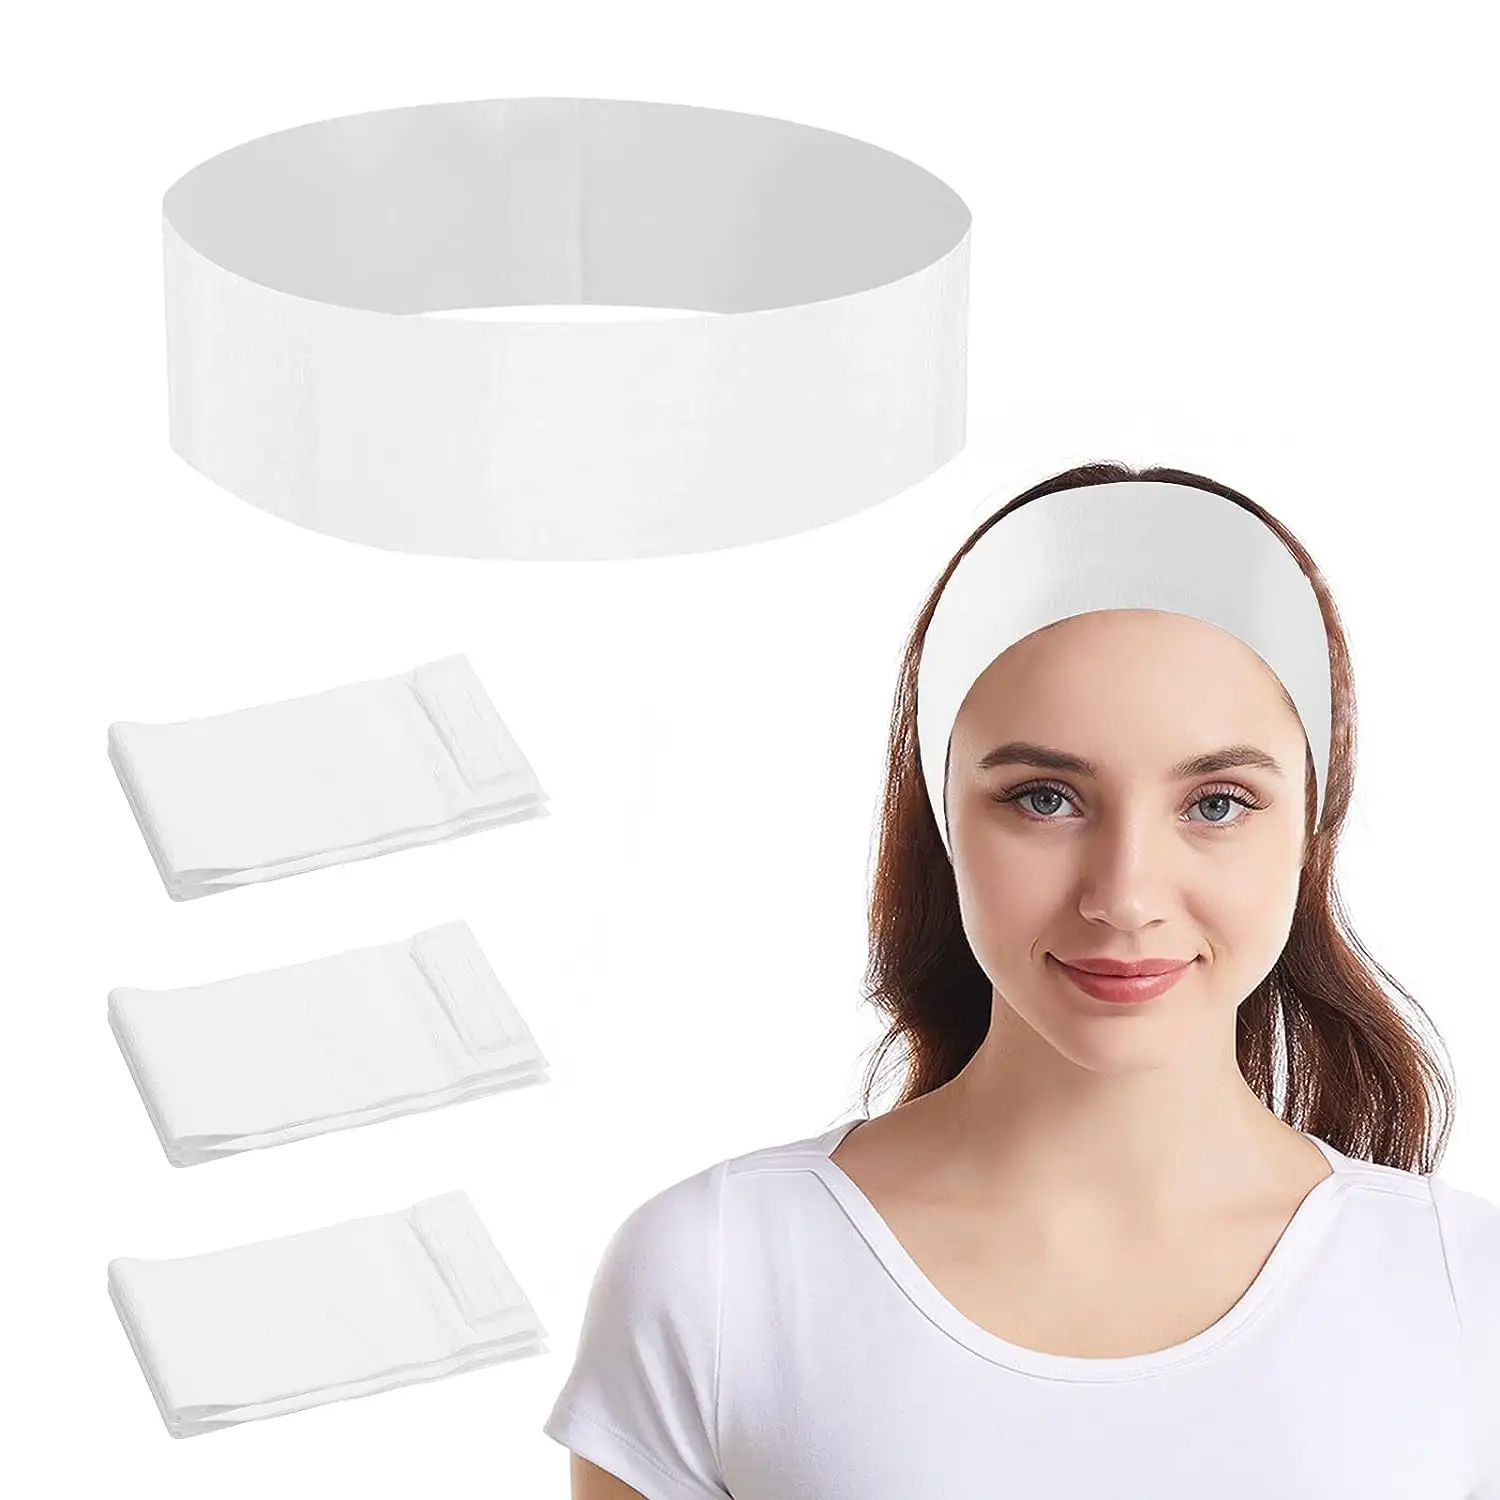 Einweg-Gesichts stirnbänder für Frauen Individuell verpackte elastische Make-up-Kopfband-Kopf wickel für Gesichts behandlungen Hautpflege-Spa